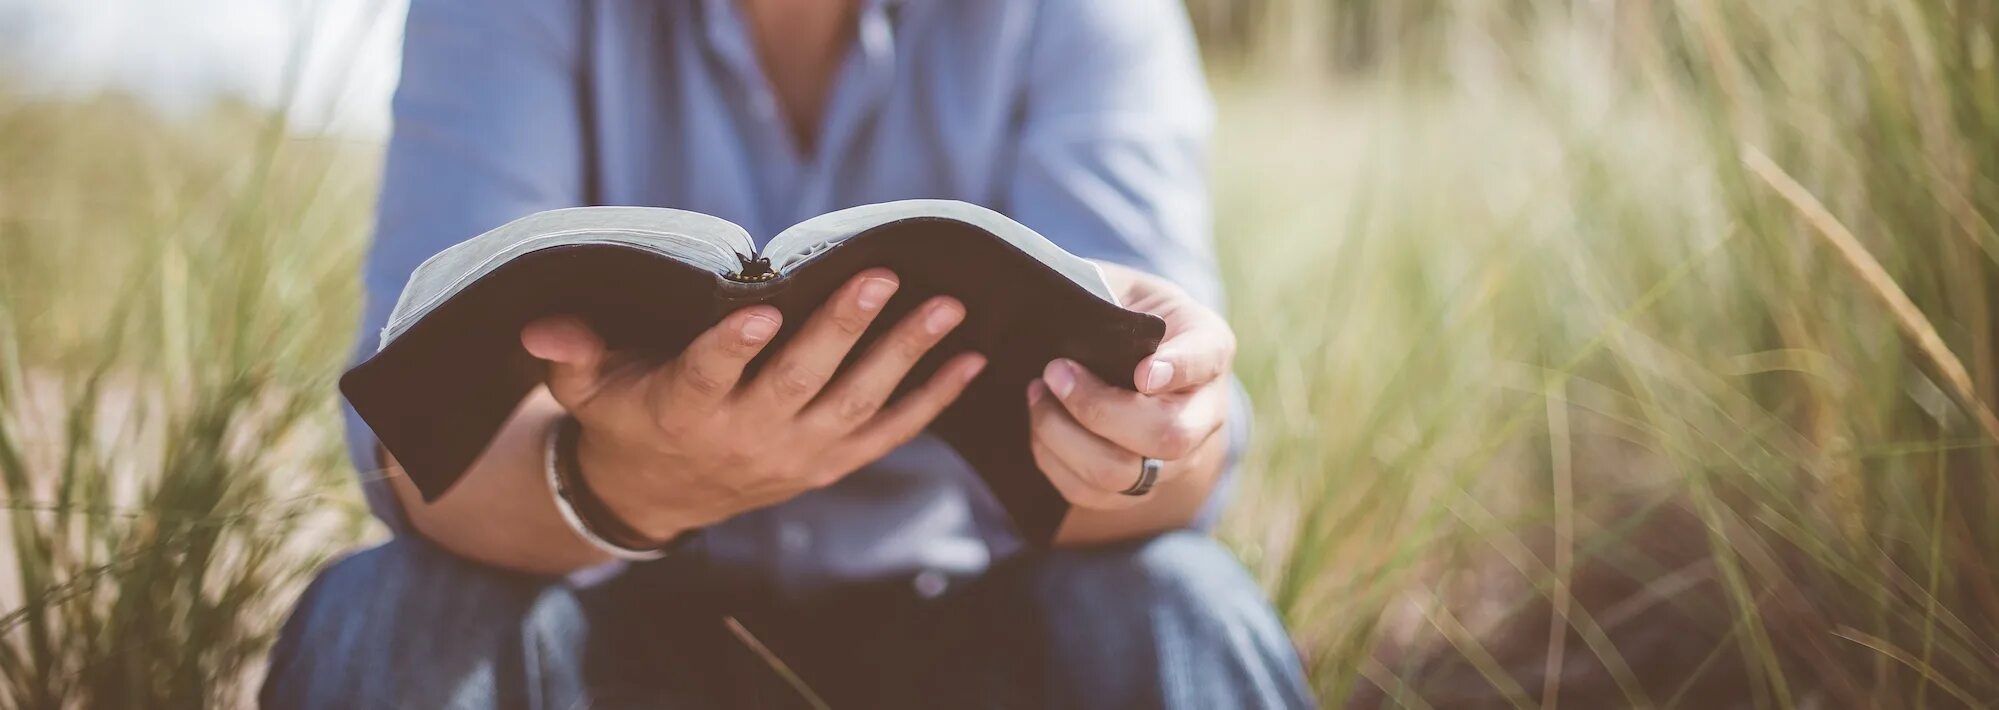 Читаем библию. Человек с Библией. Библия в руках. Человек с Библией на природе. Человек читает Библию.